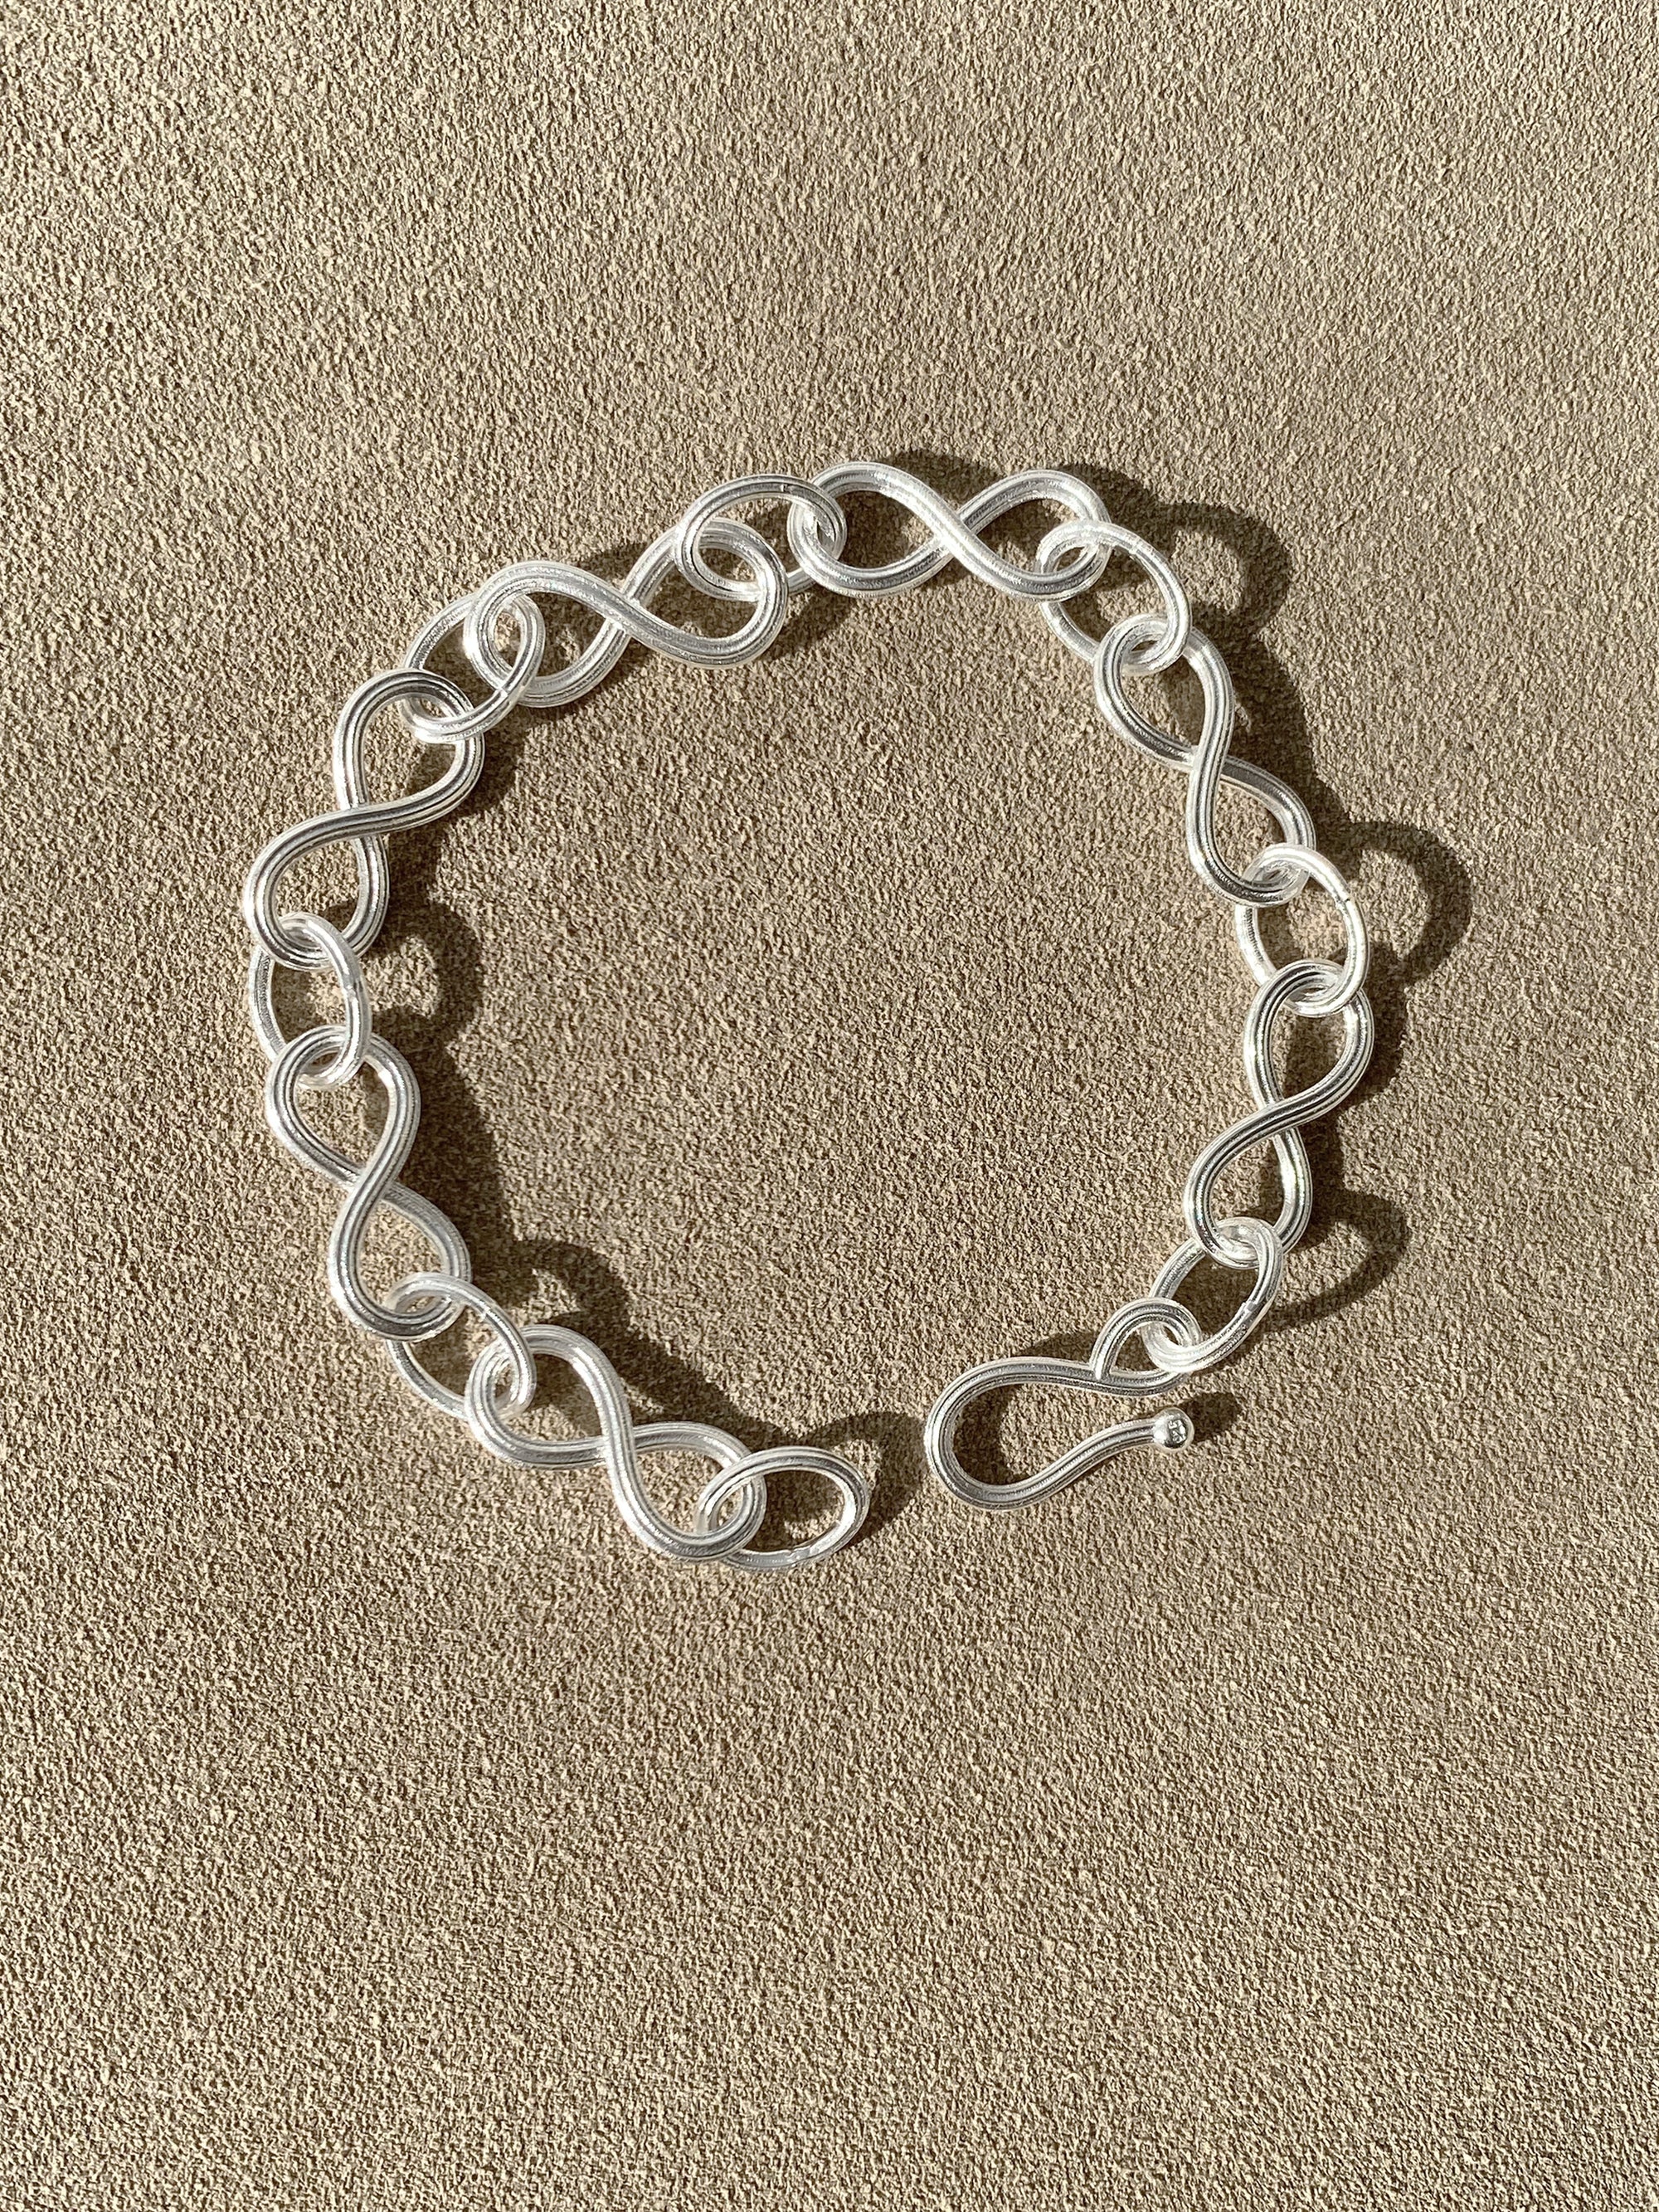 Entwined bracelet - IDAMARI